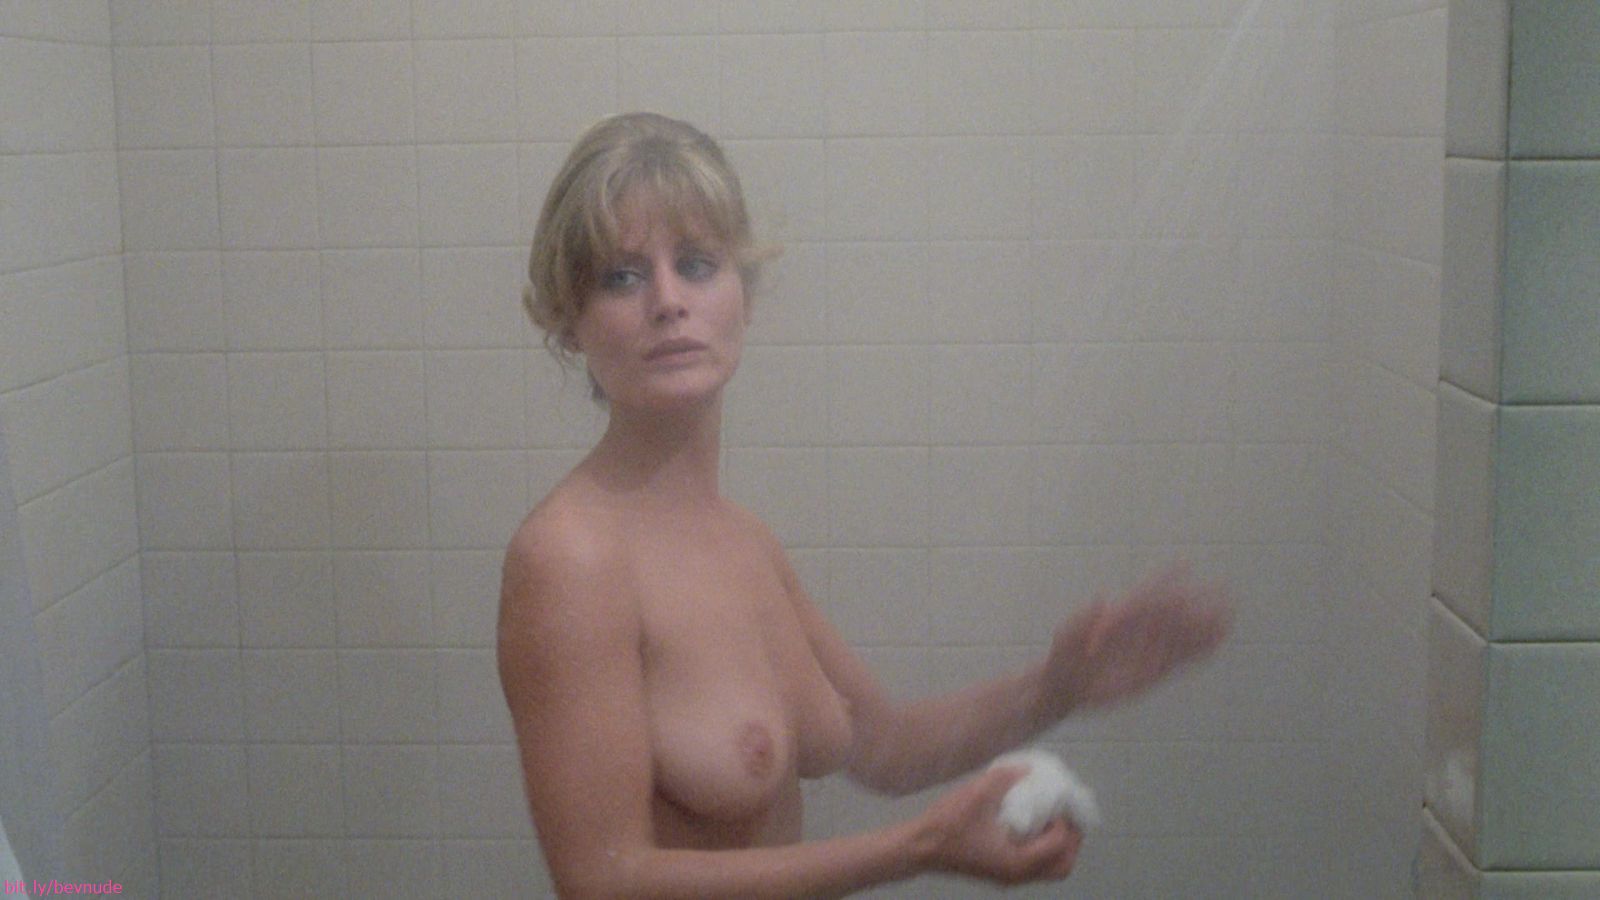 Beverly dangelo shower scene